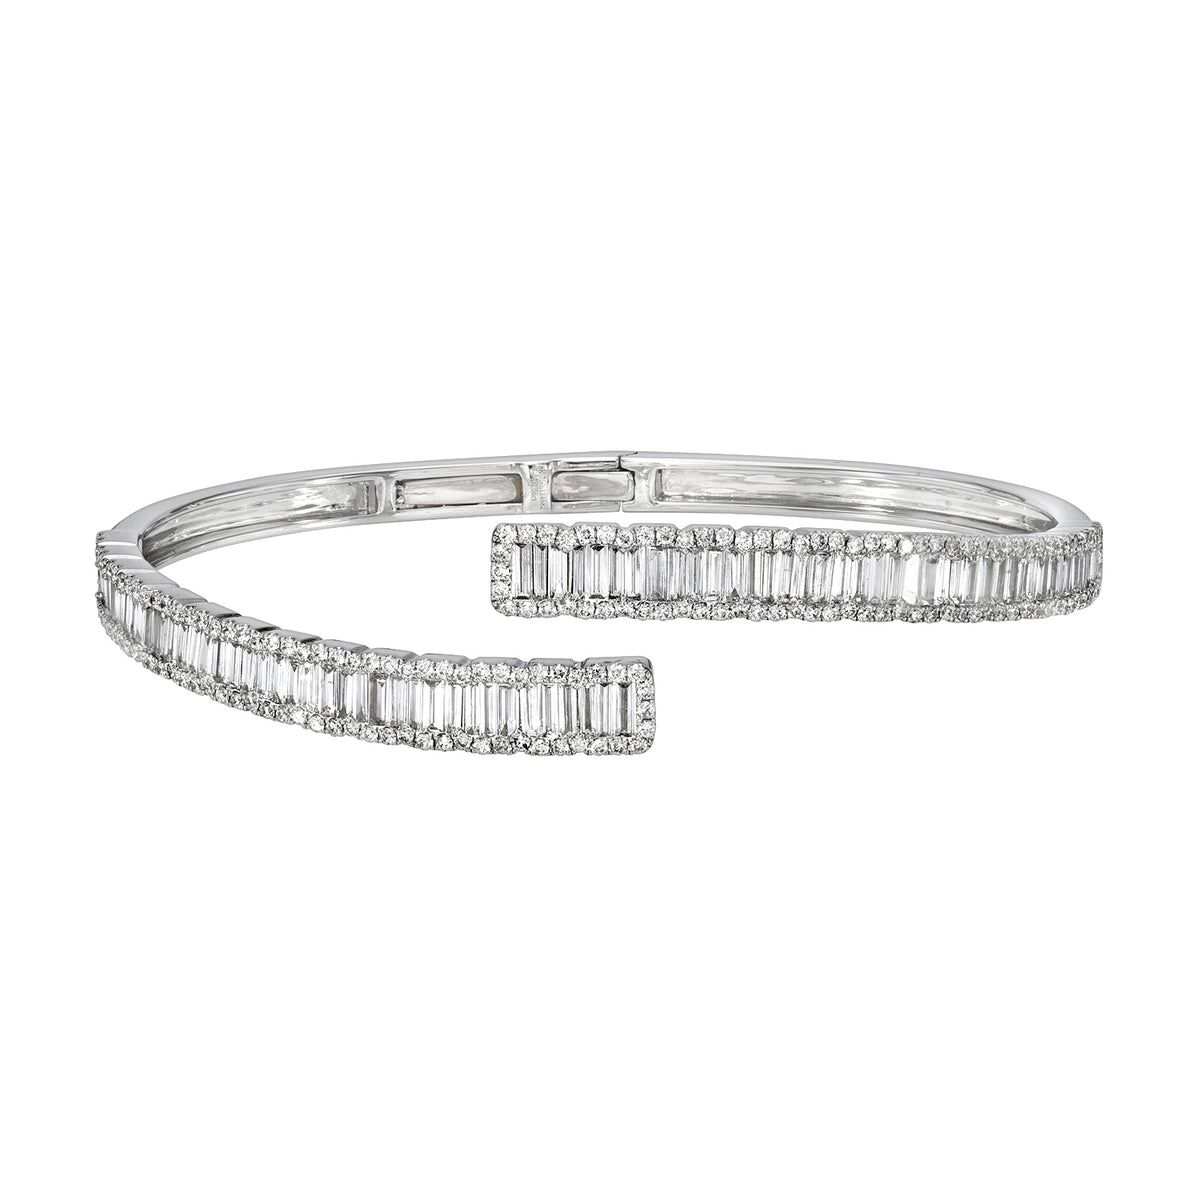 Claire Baguette Cut Tennis Bracelet – Nicholls Jewellery